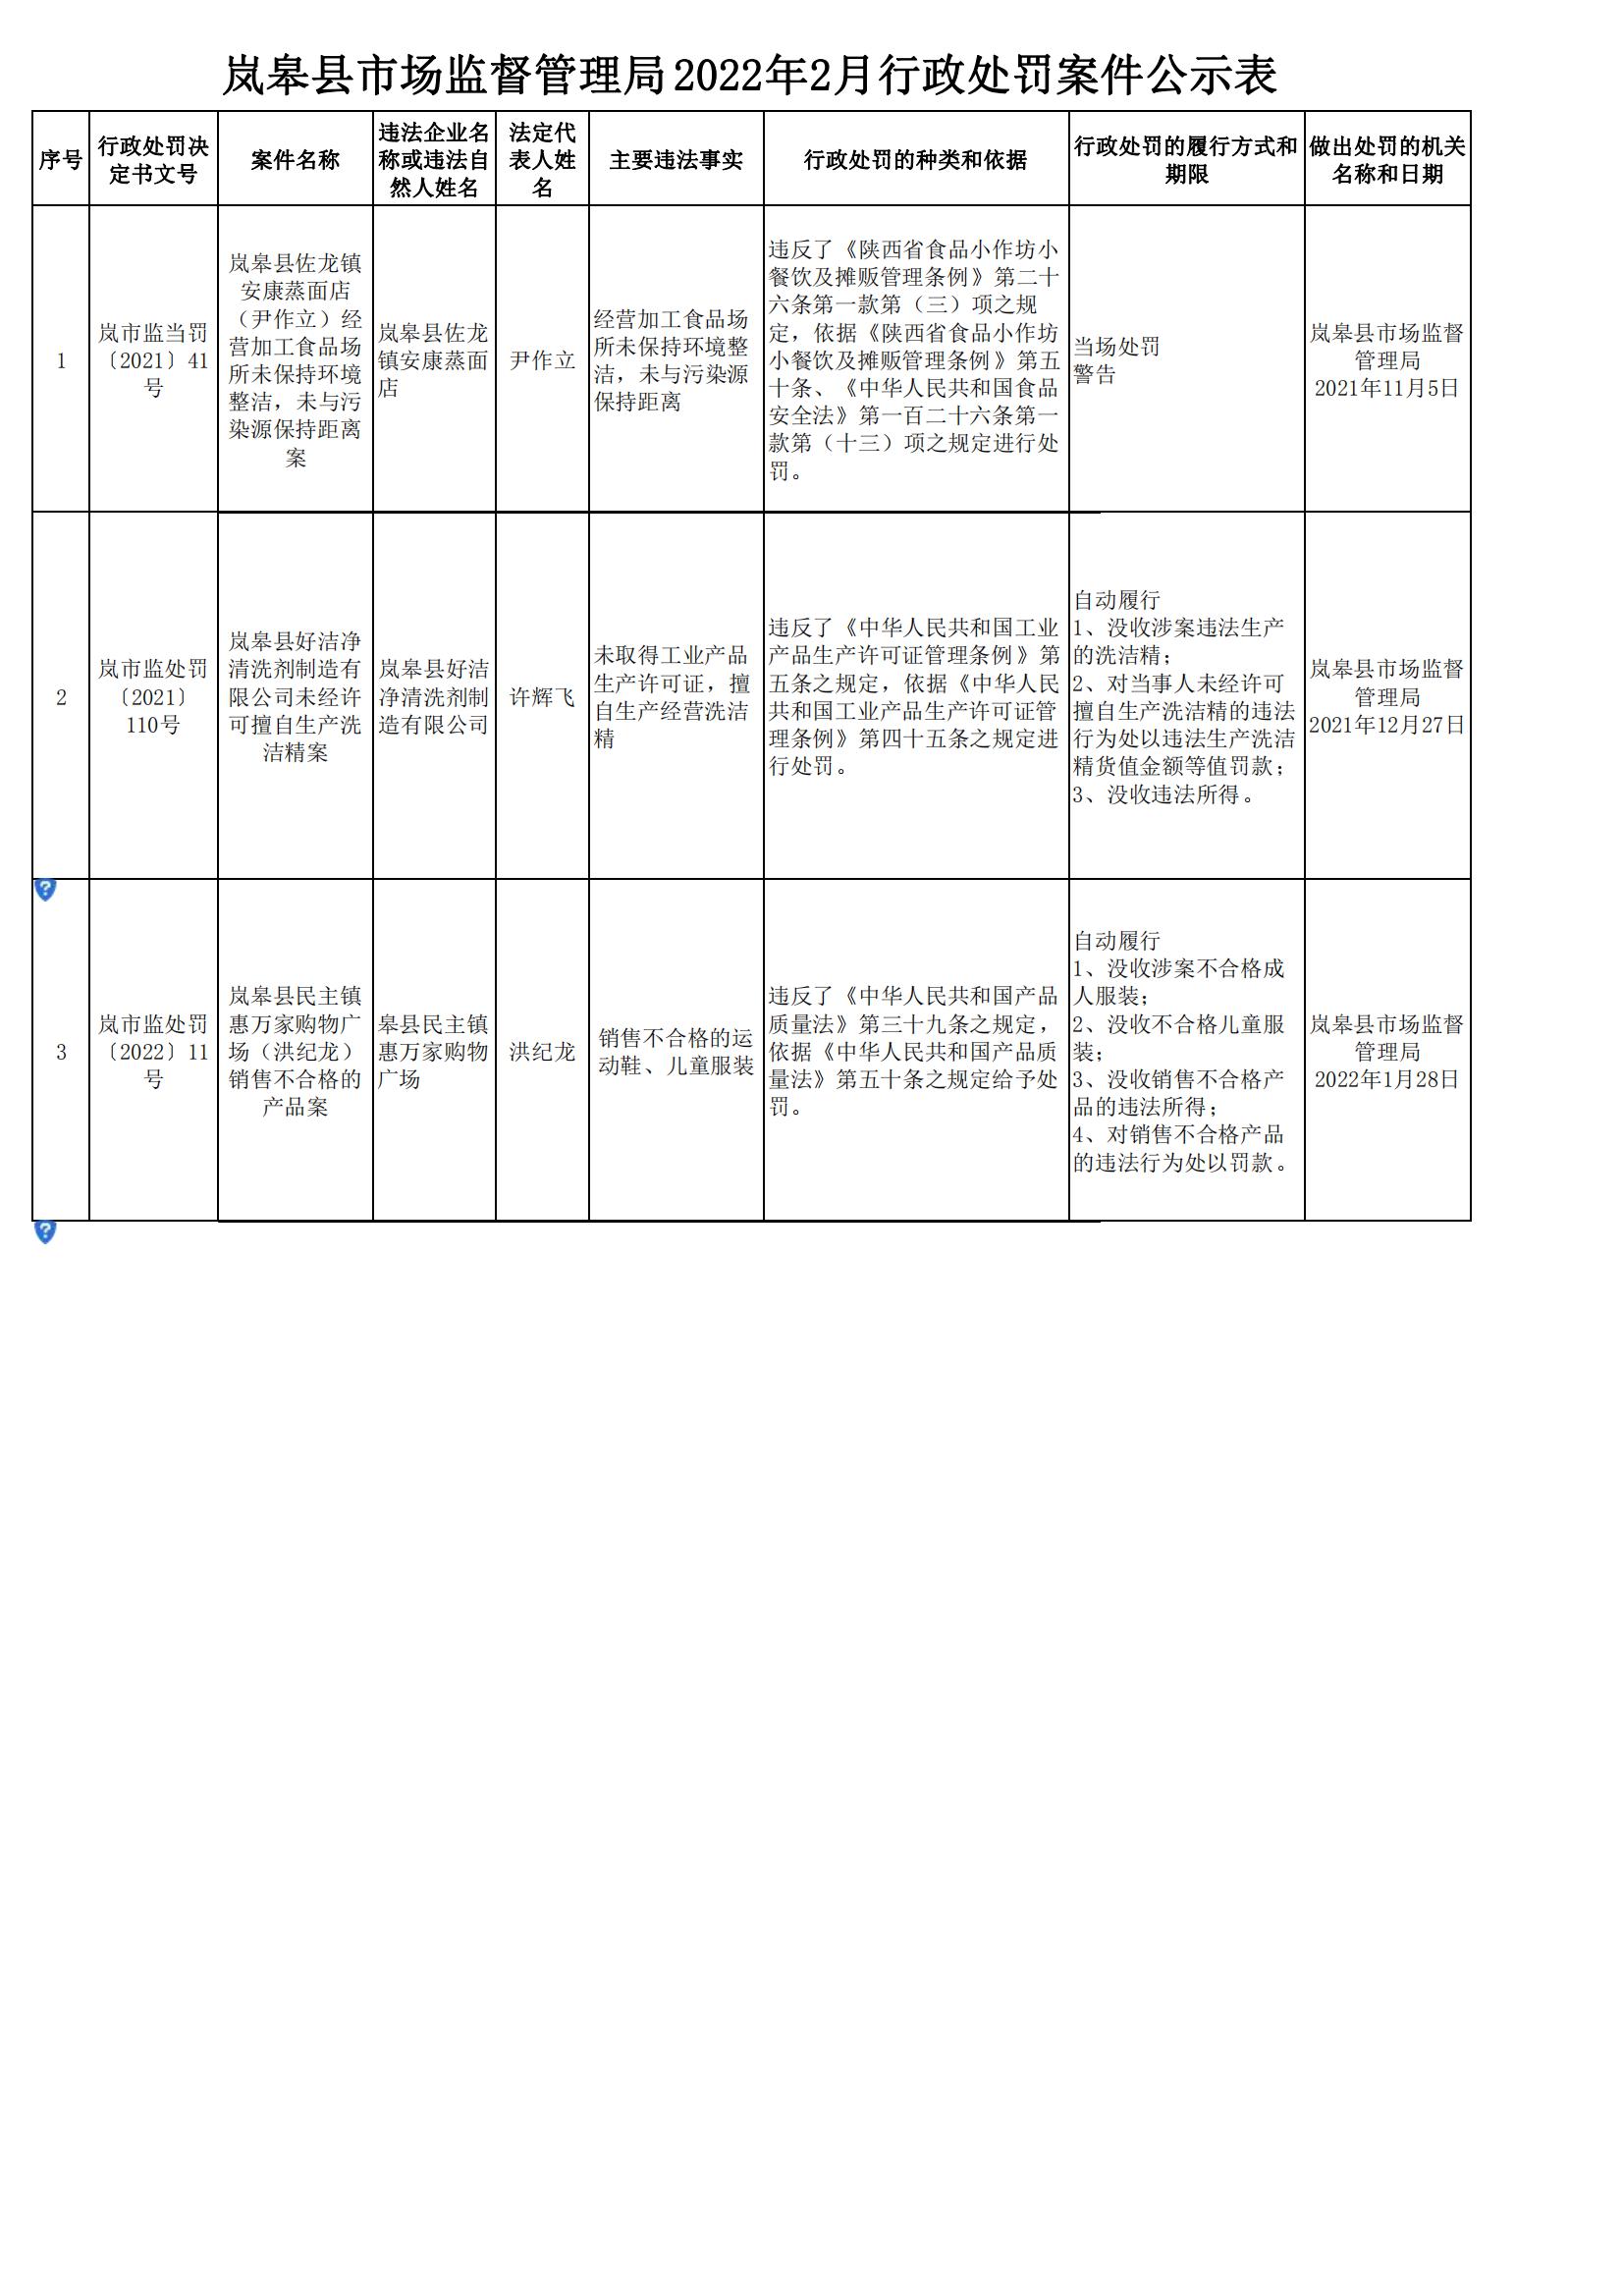 岚皋县市场监督管理局22年2月行政处罚案件公示表 岚皋县人民政府网站